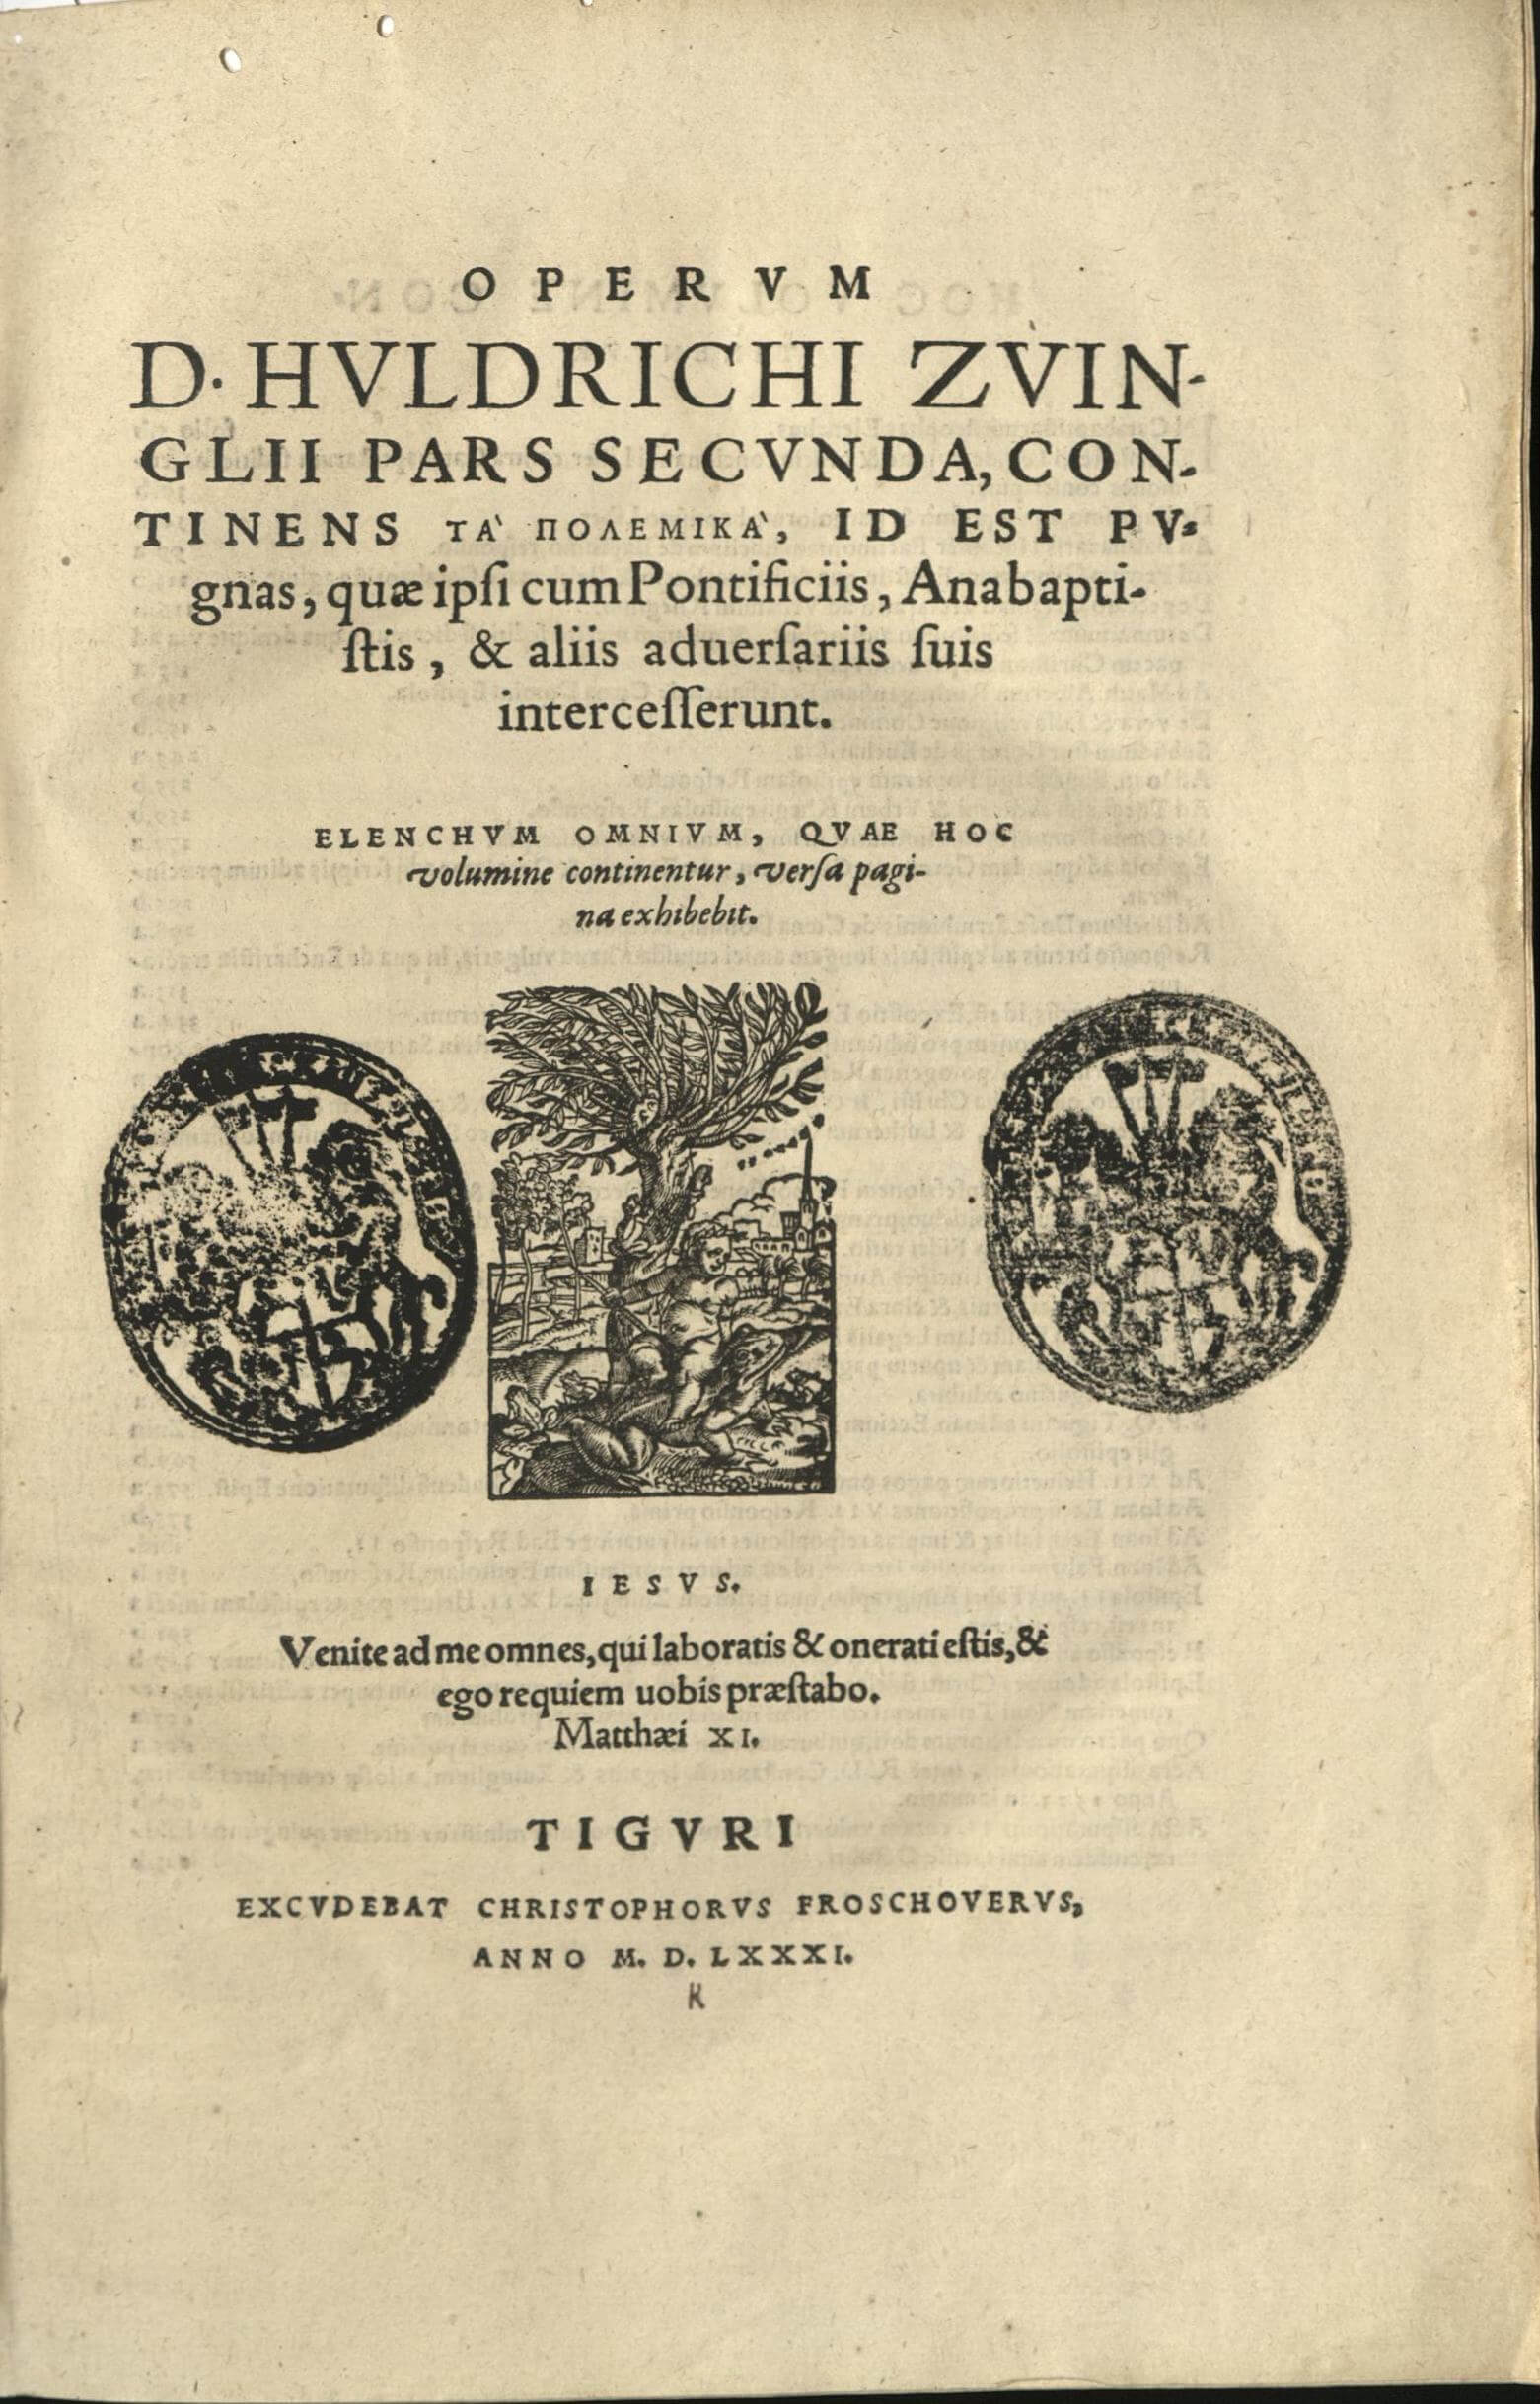 Zwingli, Gesamtausgabe in Latein, 3 Bände, 1581 zum 50. Todestag